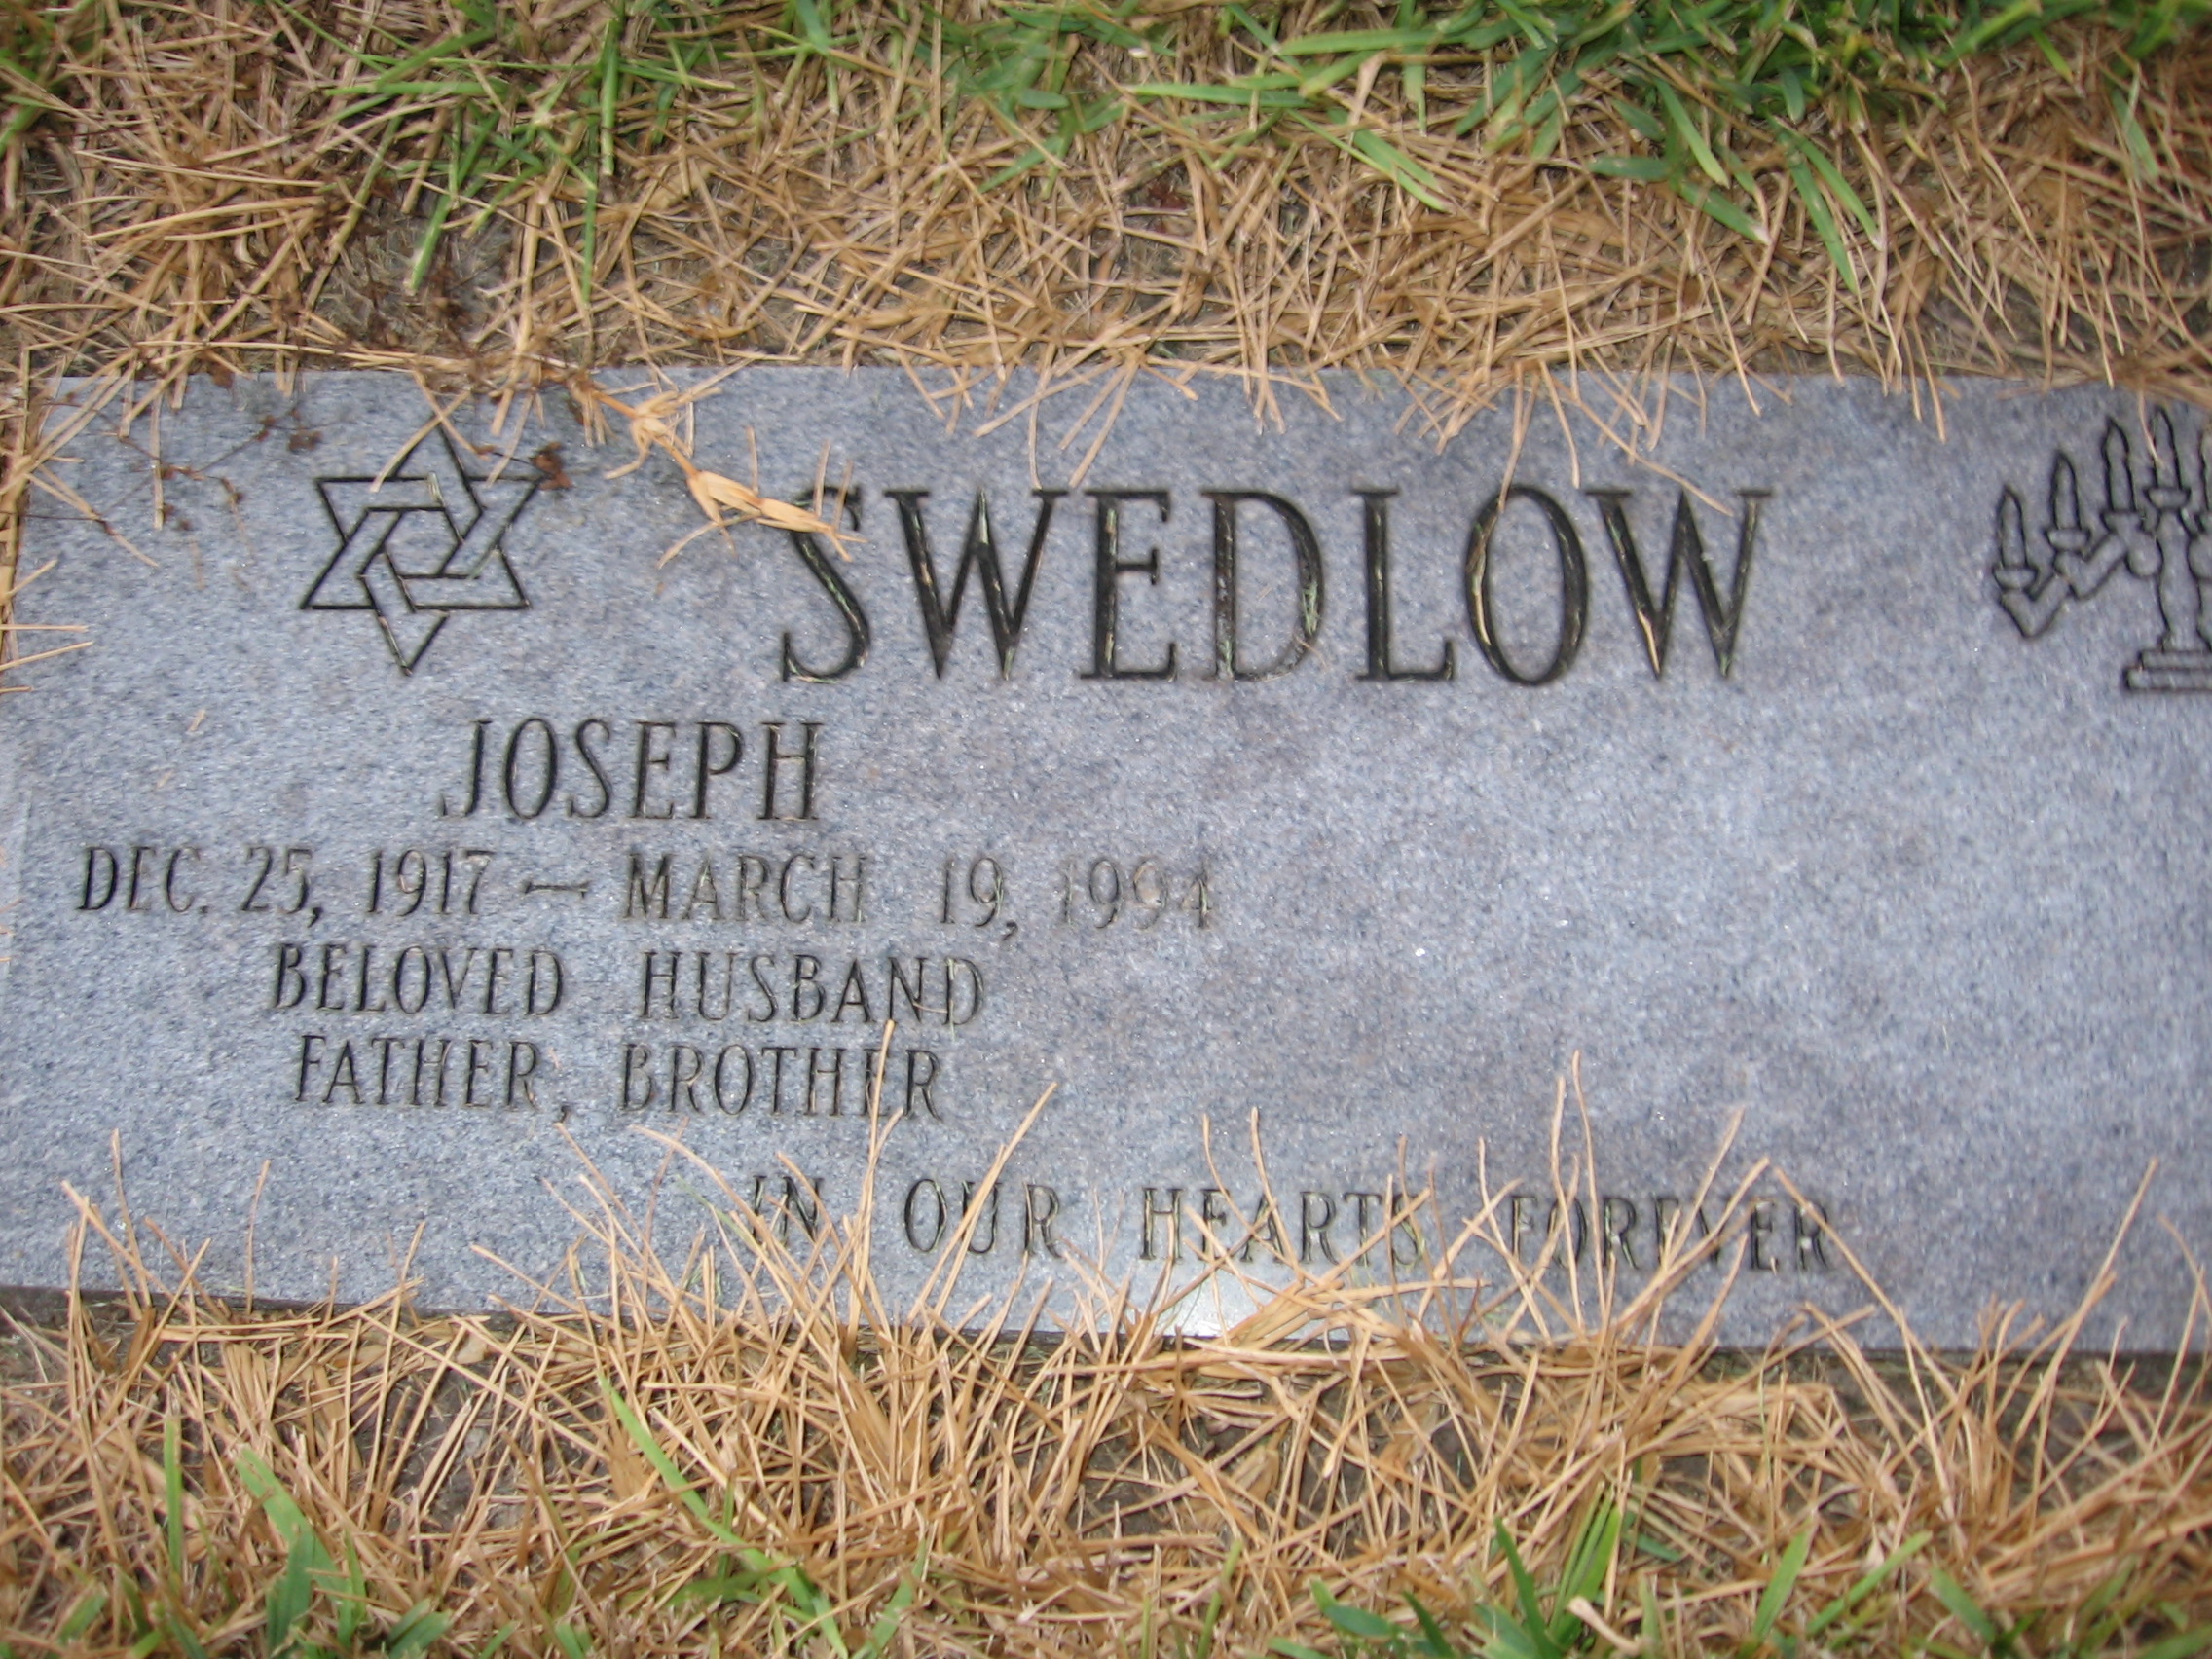 Joseph Swedlow